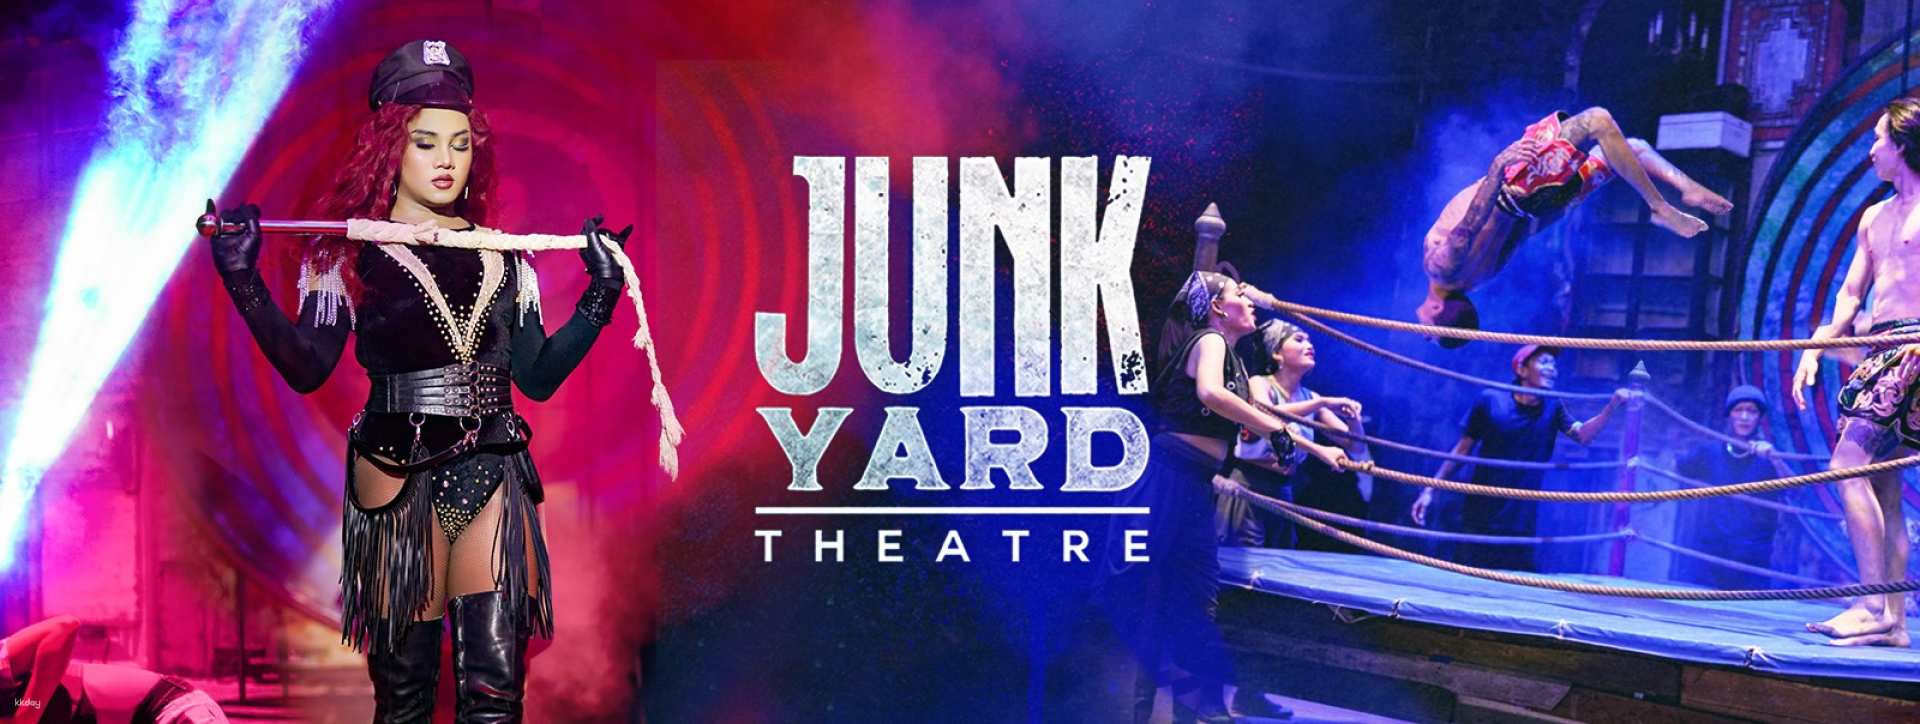 泰國-普吉島垃圾劇院Junkyard Theatre門票